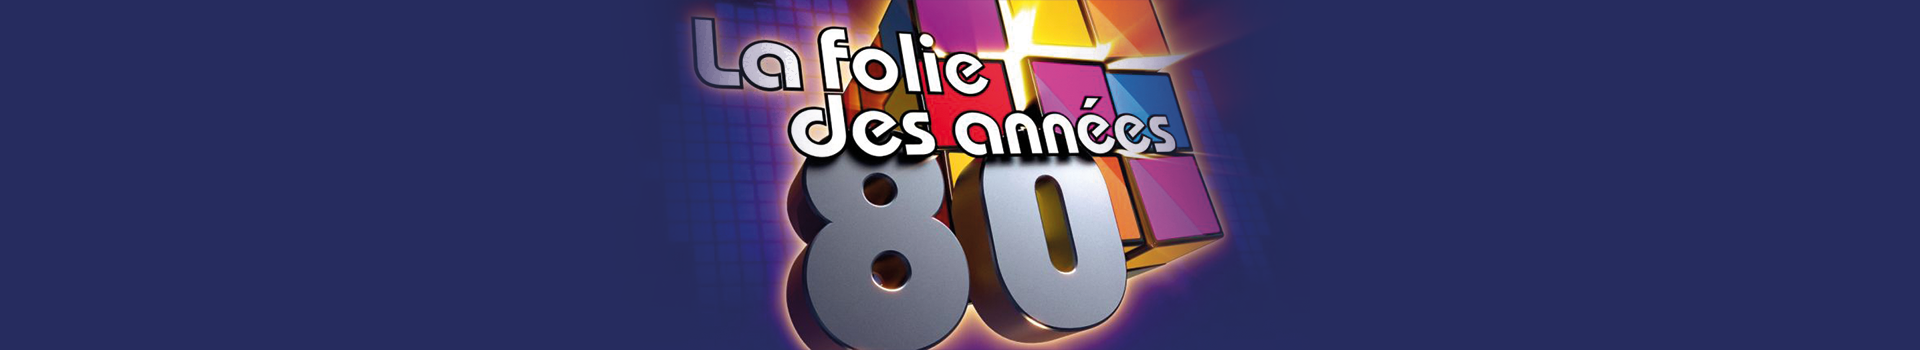 LA FOLIE DES ANNEES 80